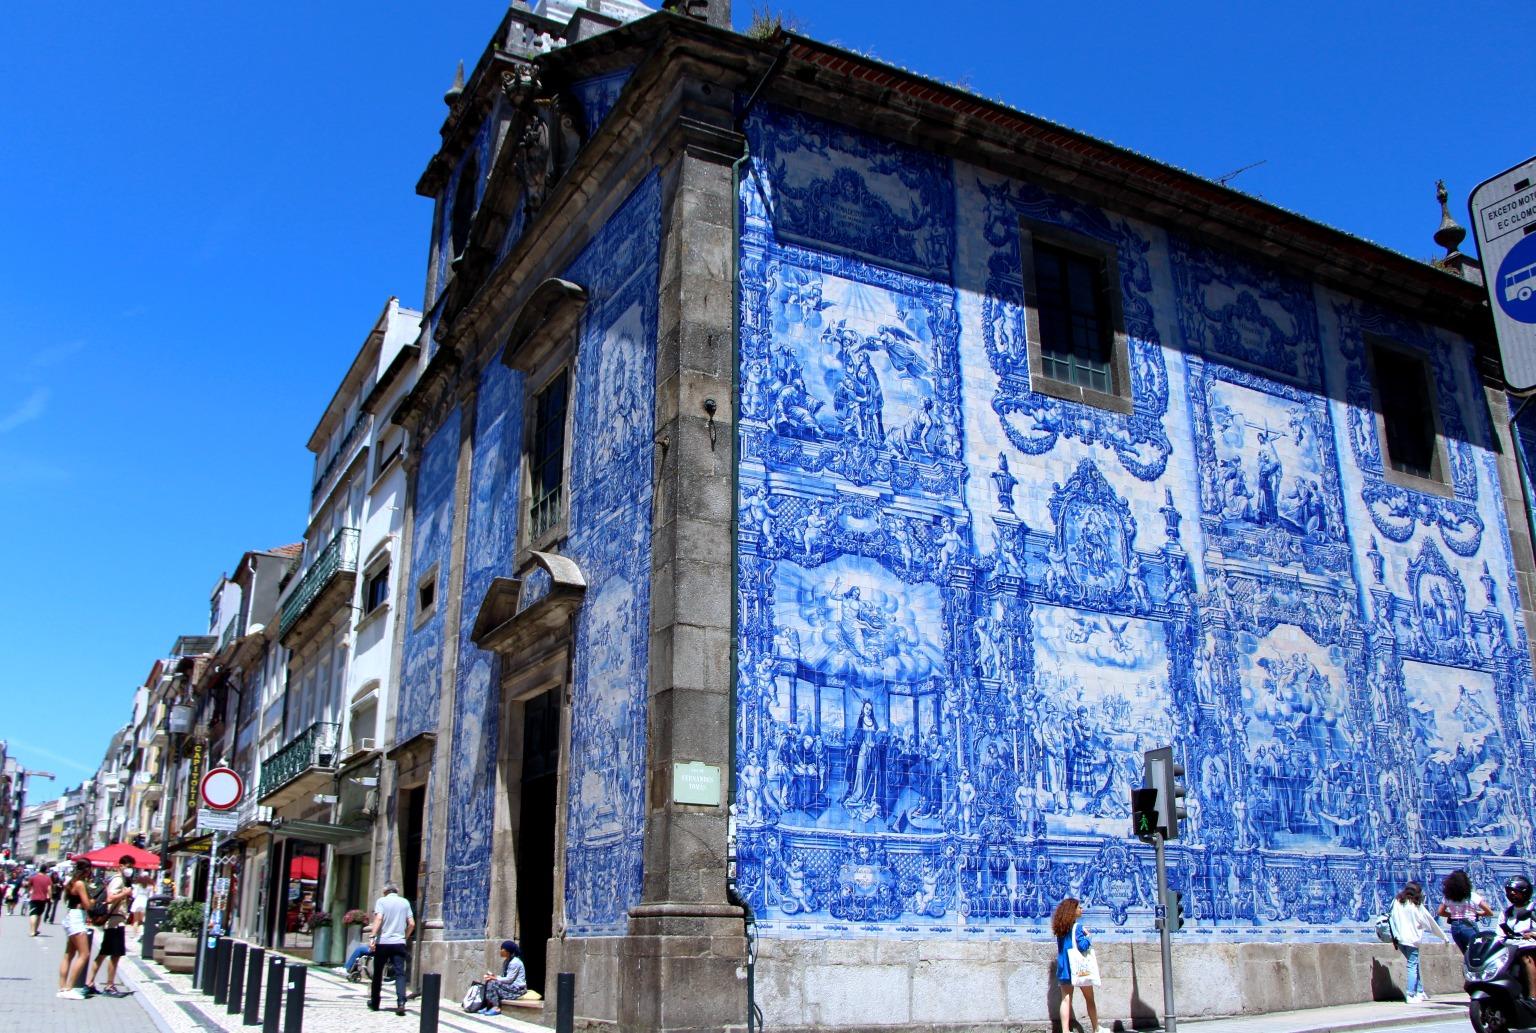 La Capela das Almas, ornée de magnifiques azulejos, témoigne de la maîtrise artistique portugaise.